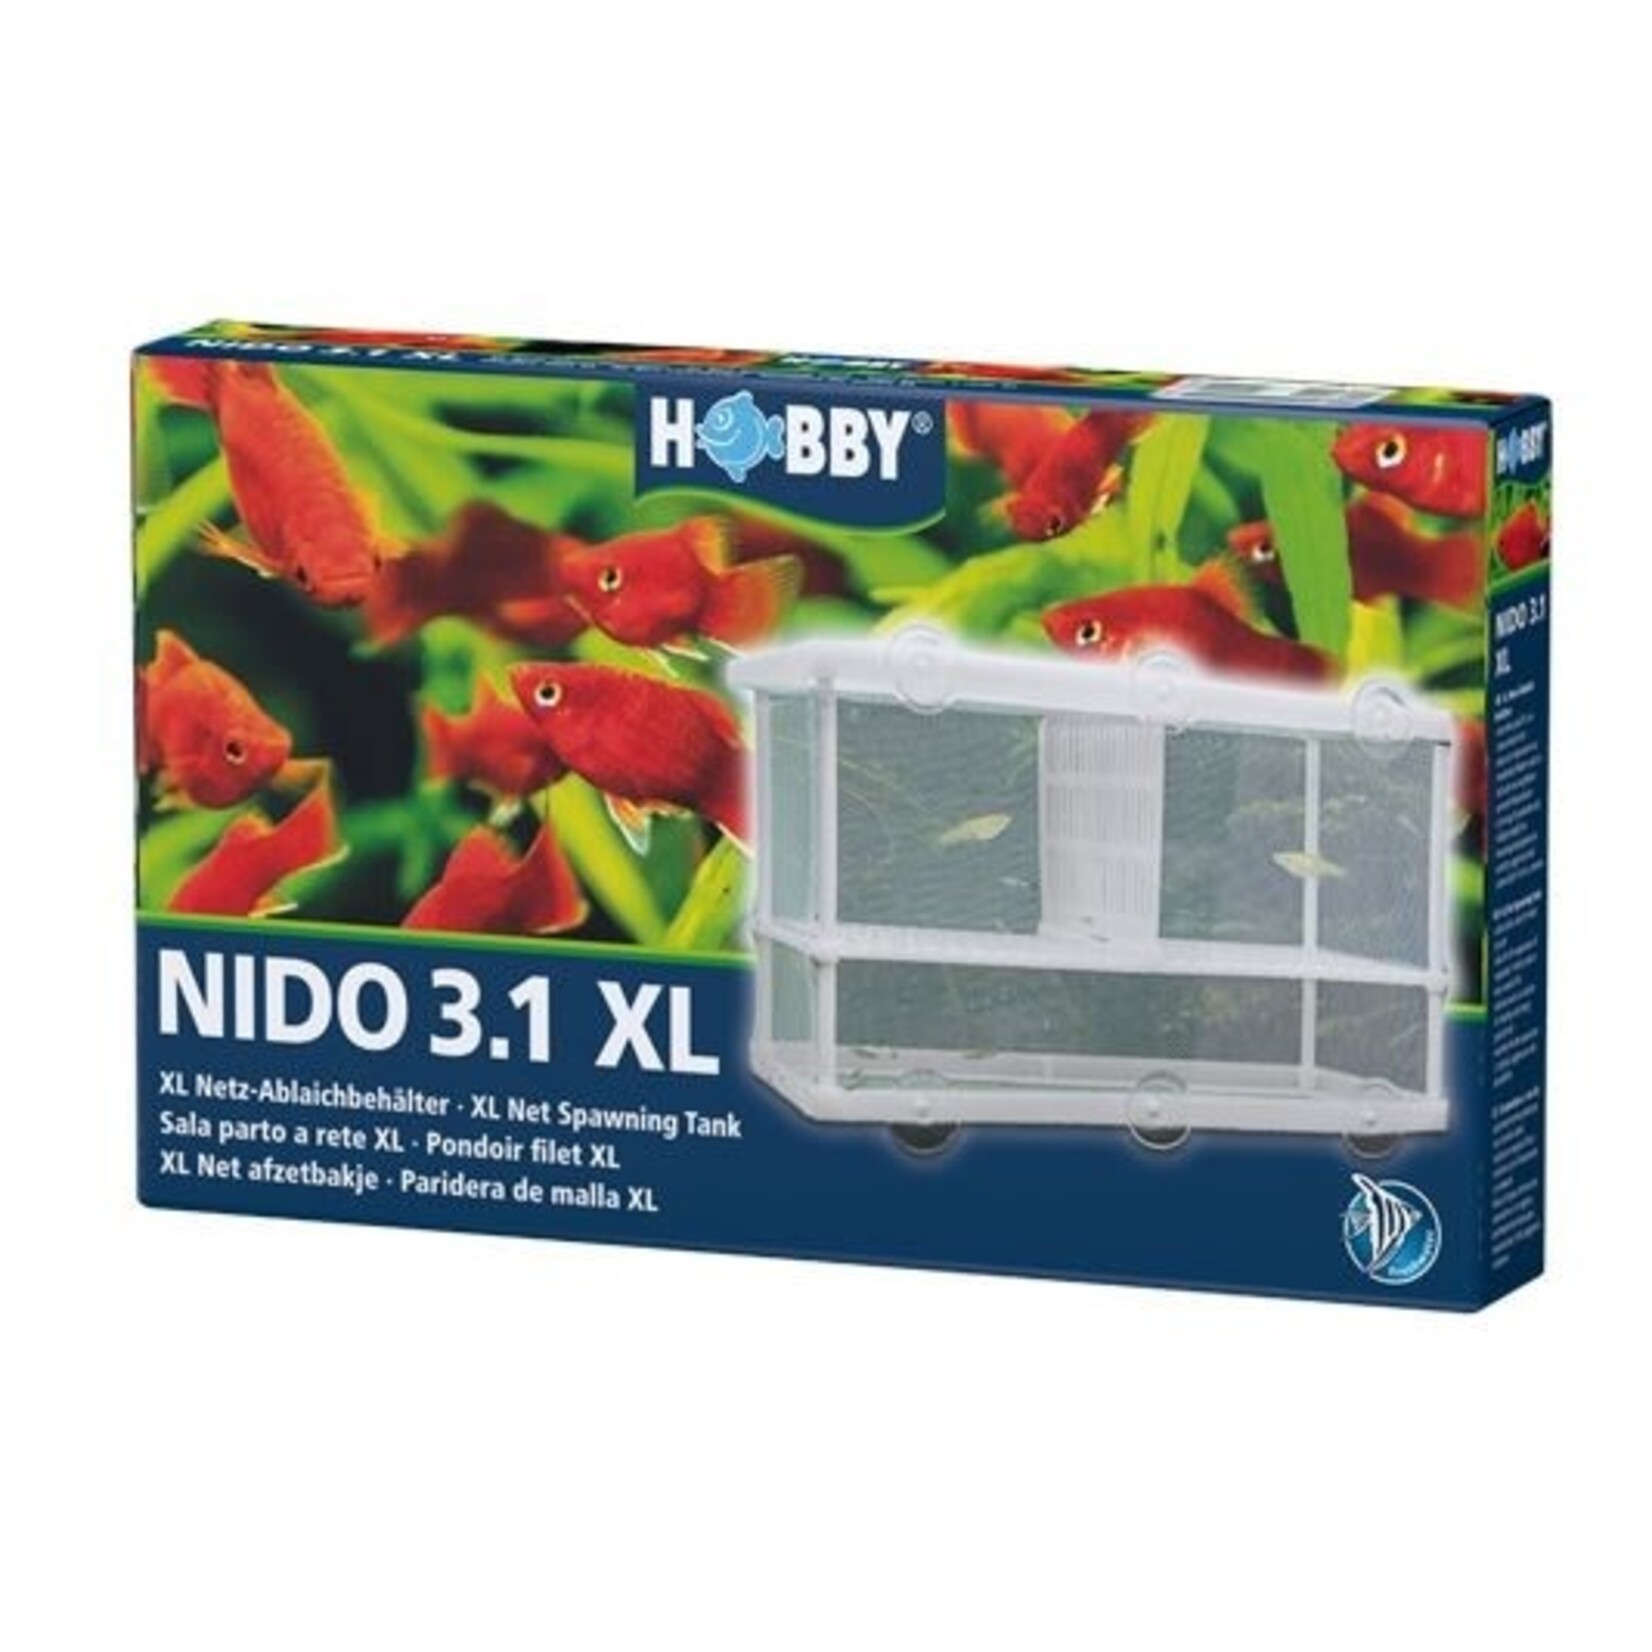 Hobby Nido 3.1 xl storage tray 25x15x14.5 cm